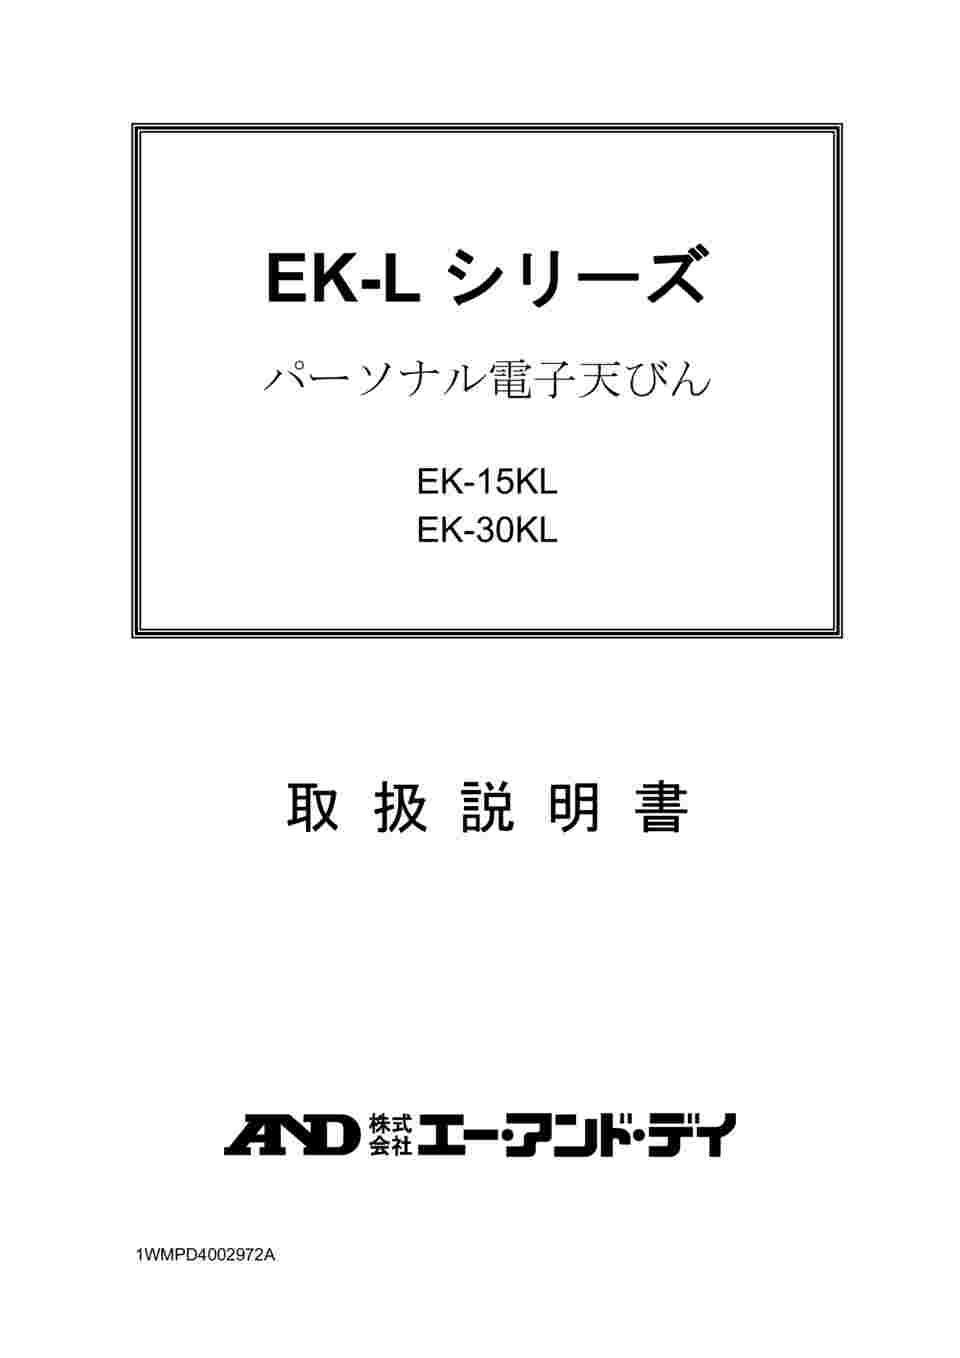 64-4050-85 パーソナル大型電子天びん EK-Lシリーズ ひょう量:15kg 